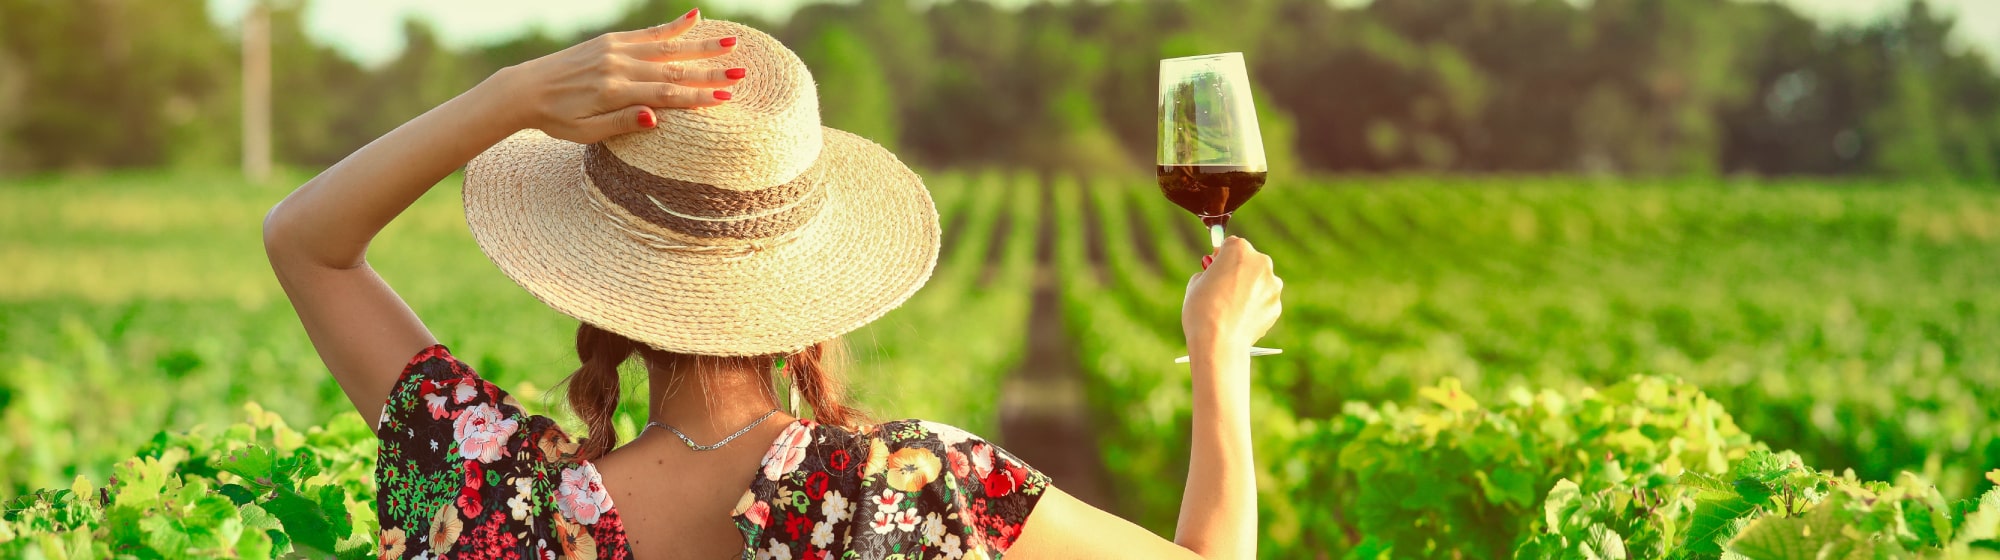 Une femme qui tient un verre de vin rouge dans un champs de vignes